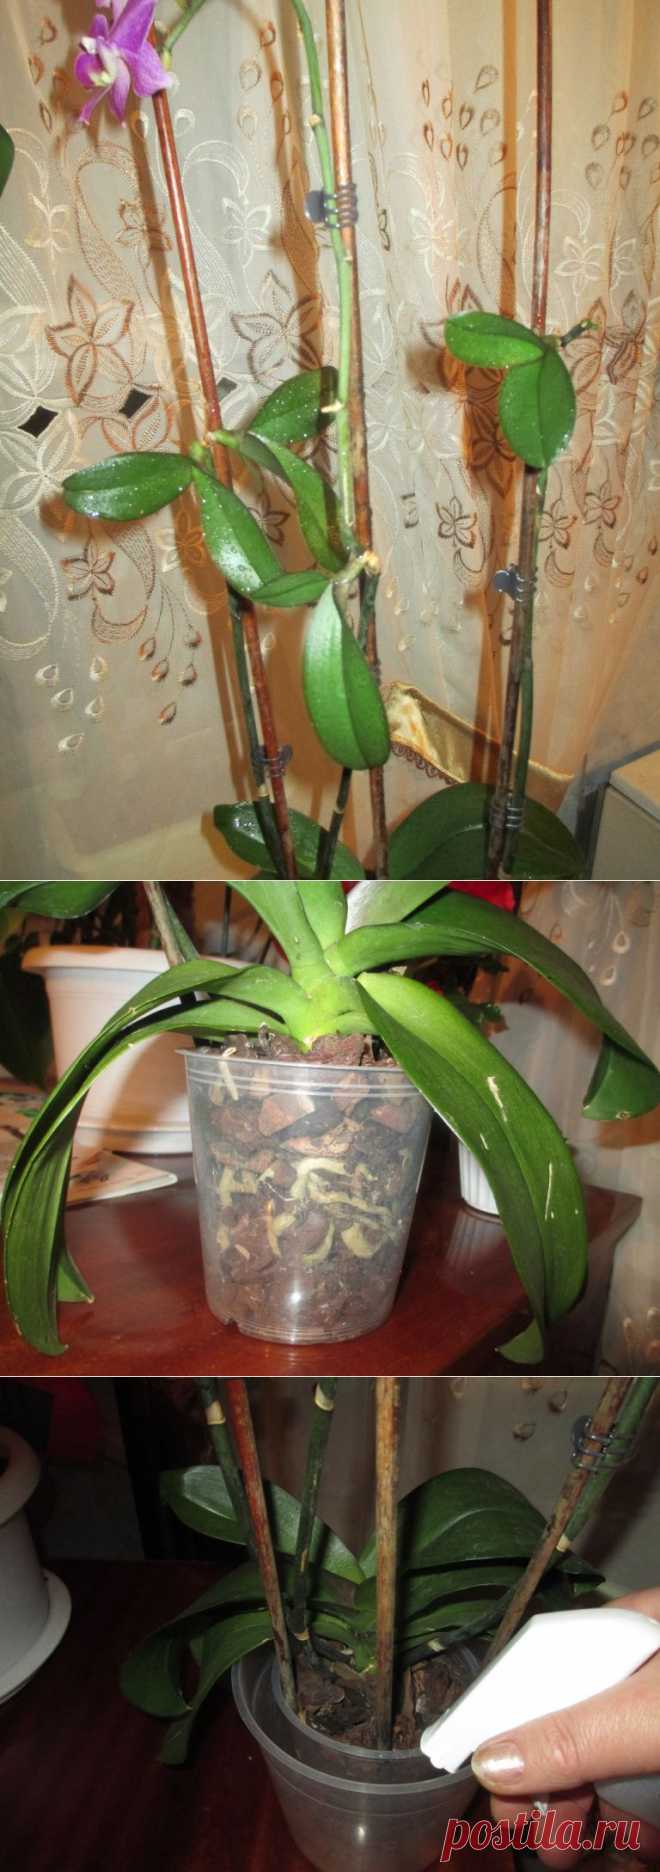 Что делать если сохнут корни орхидеи фаленопсис.